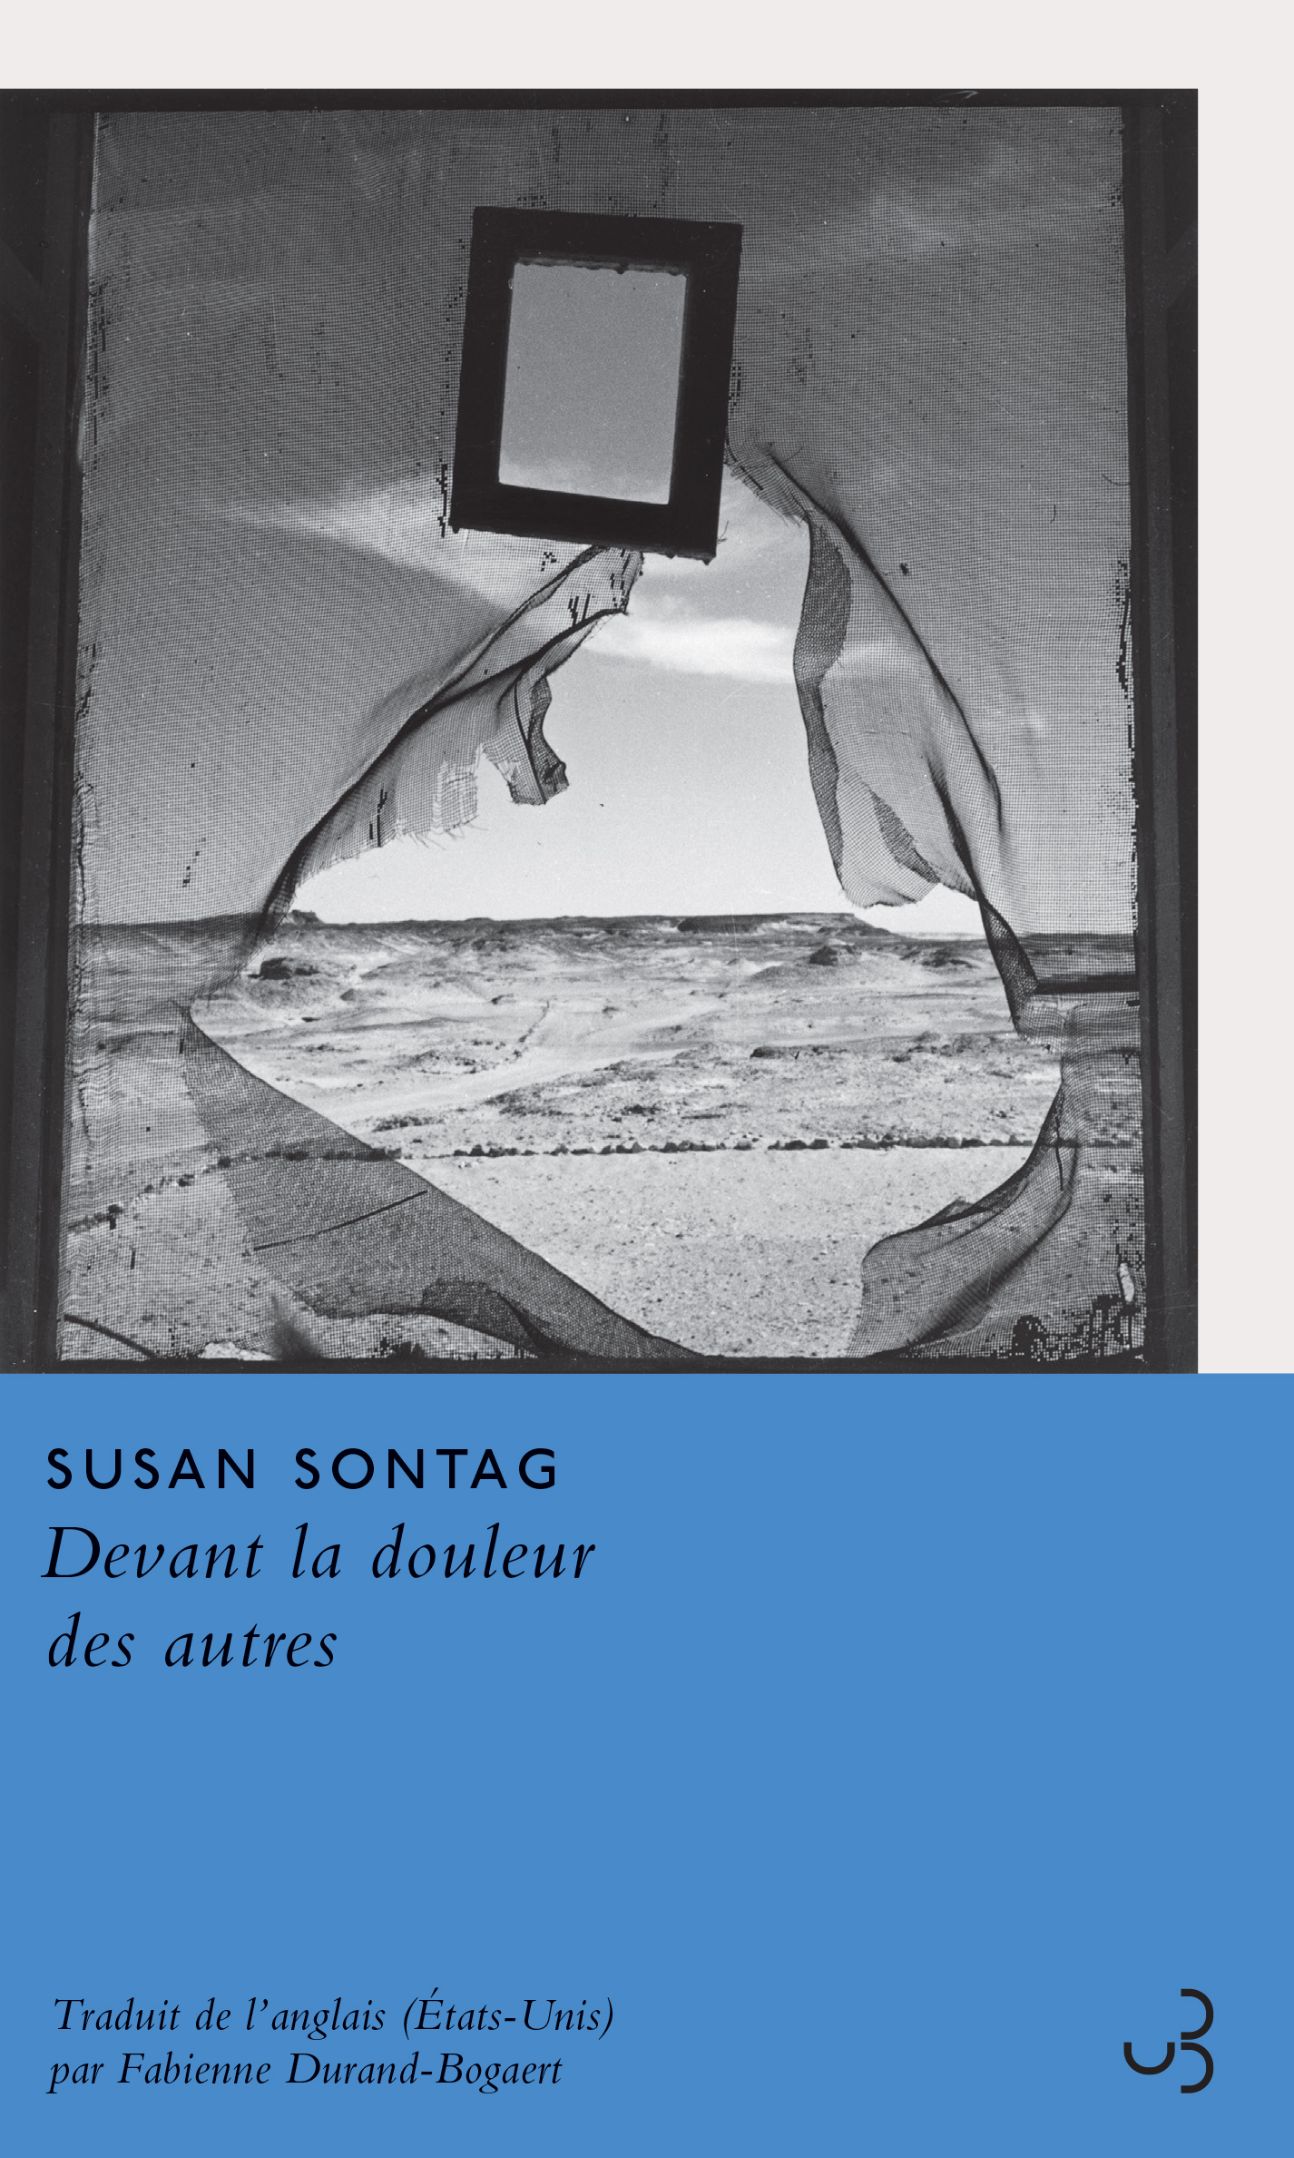 Susan Sontag, Devant la douleur des autres